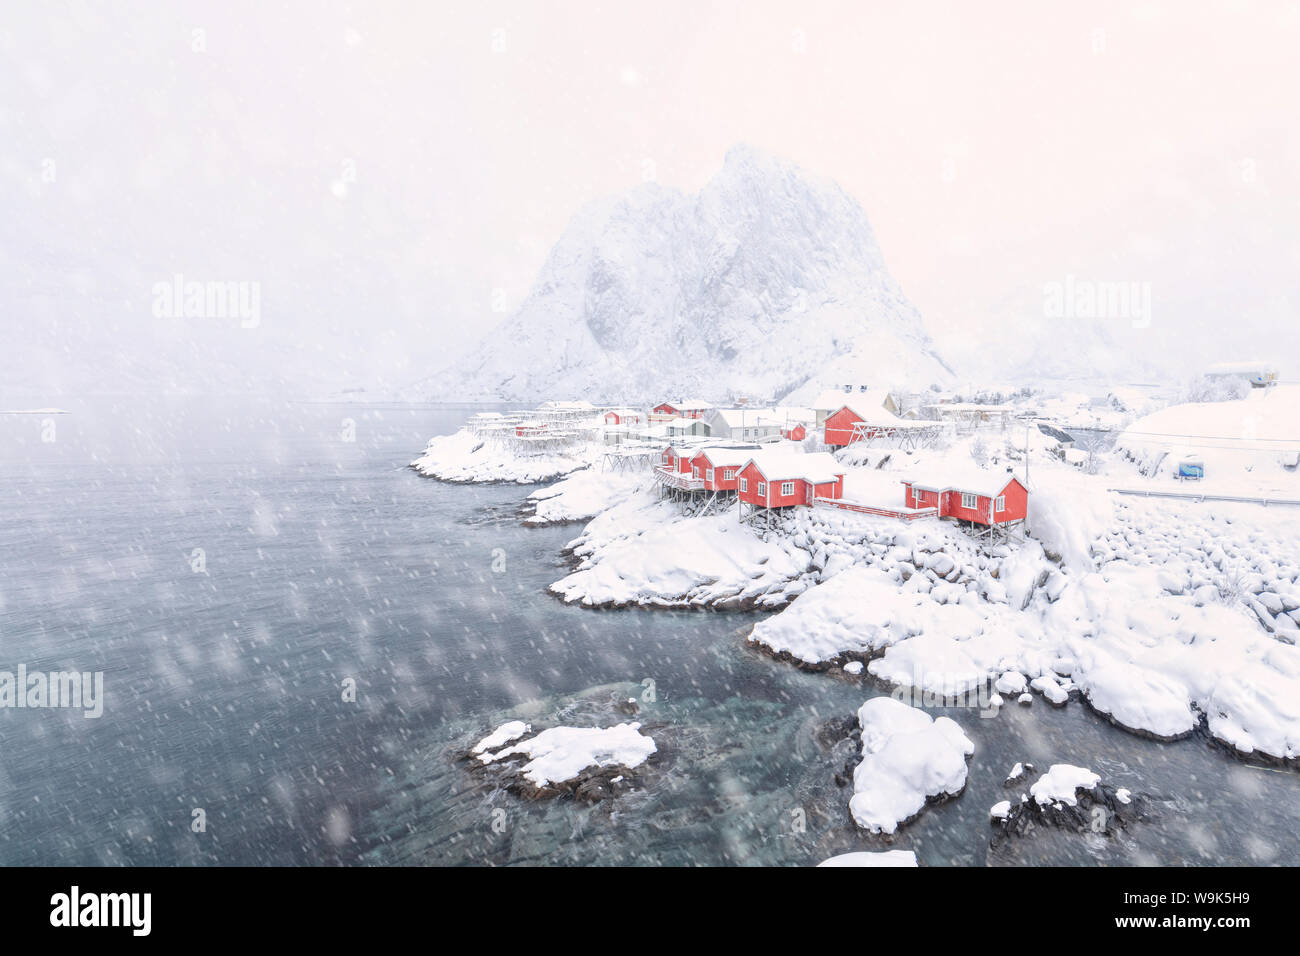 Les fortes chutes de neige sur les maisons de pêcheurs appelée Rorbu entouré par la mer gelée, Hamnoy, îles Lofoten, Norvège, de l'Arctique, Scandinavie, Europe Banque D'Images